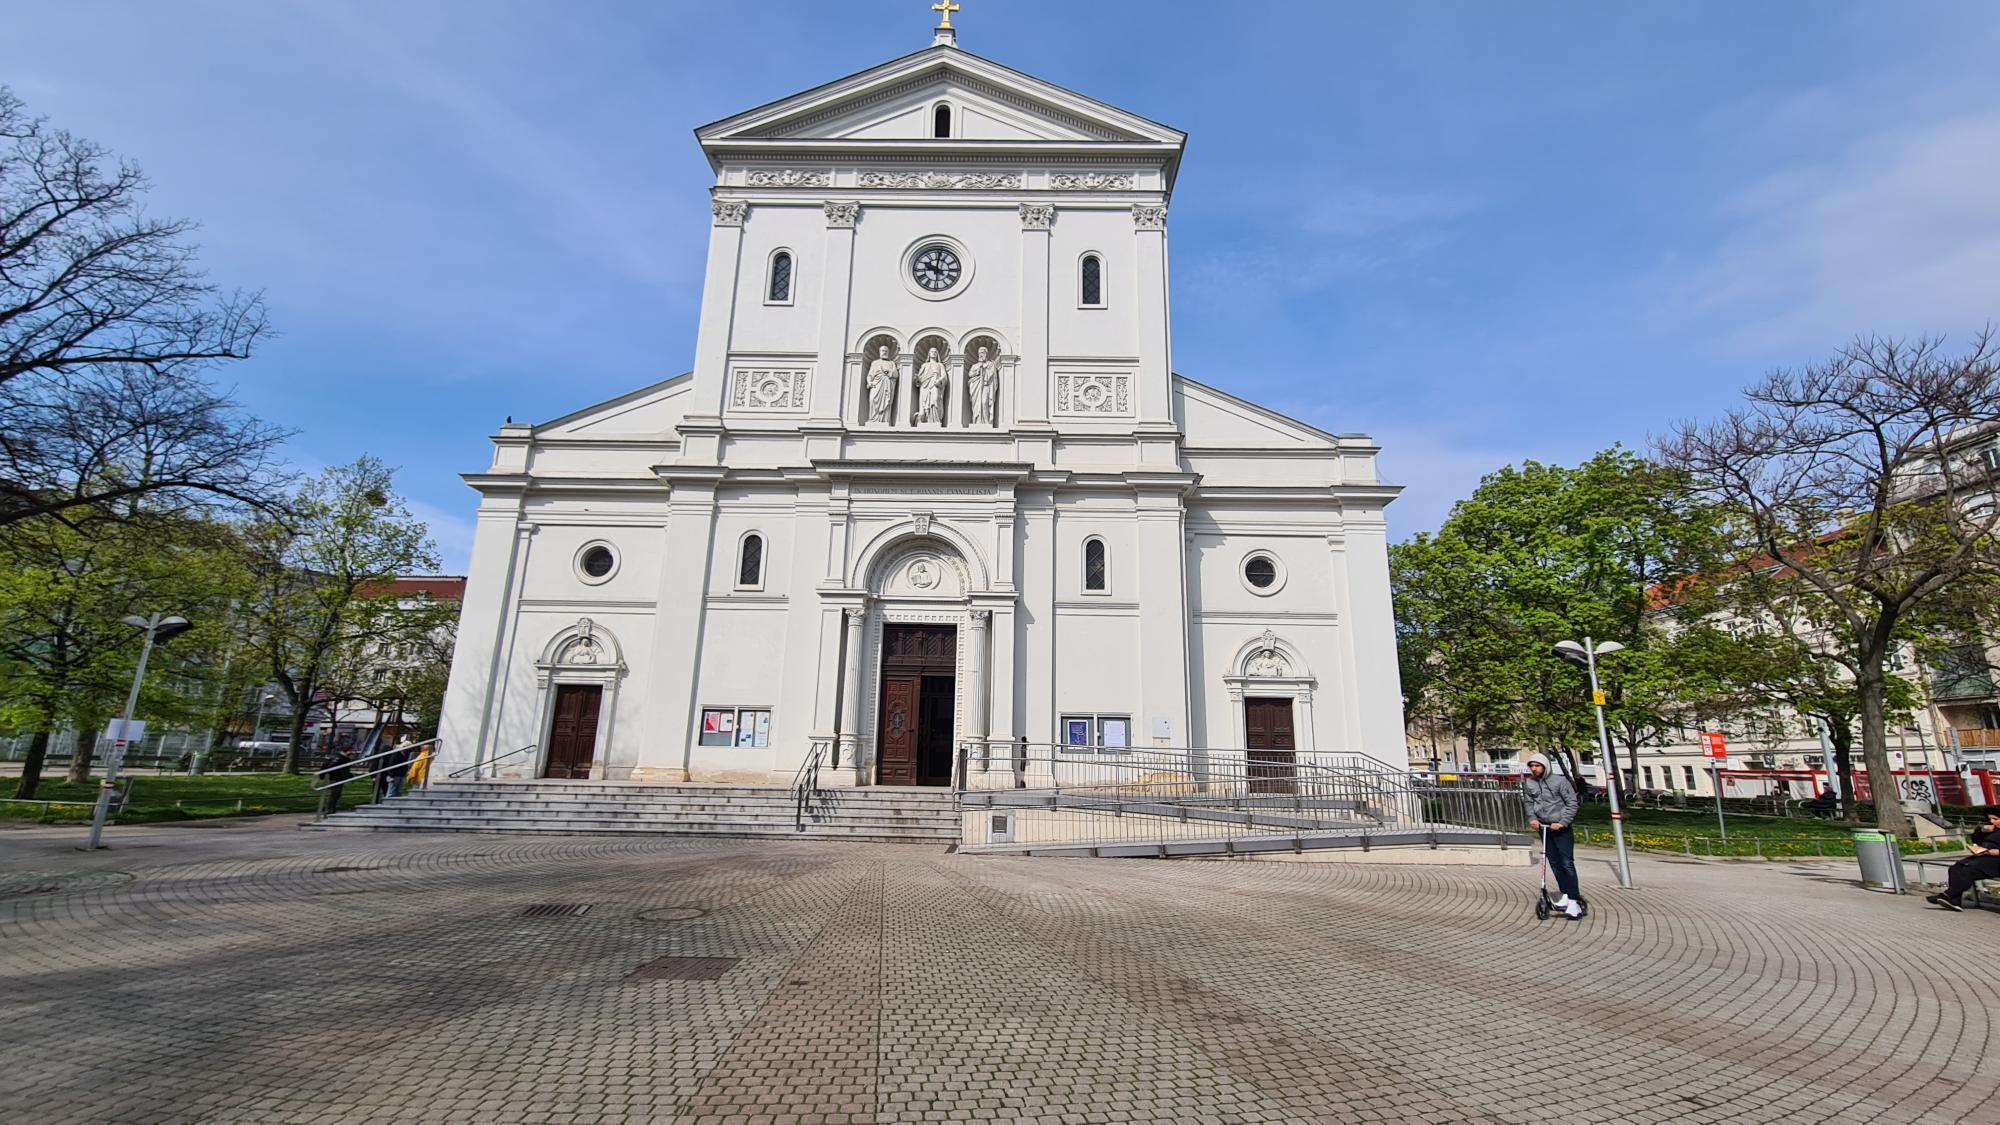 keplerkirche: madonna beschädigt und kreuz gestohlen